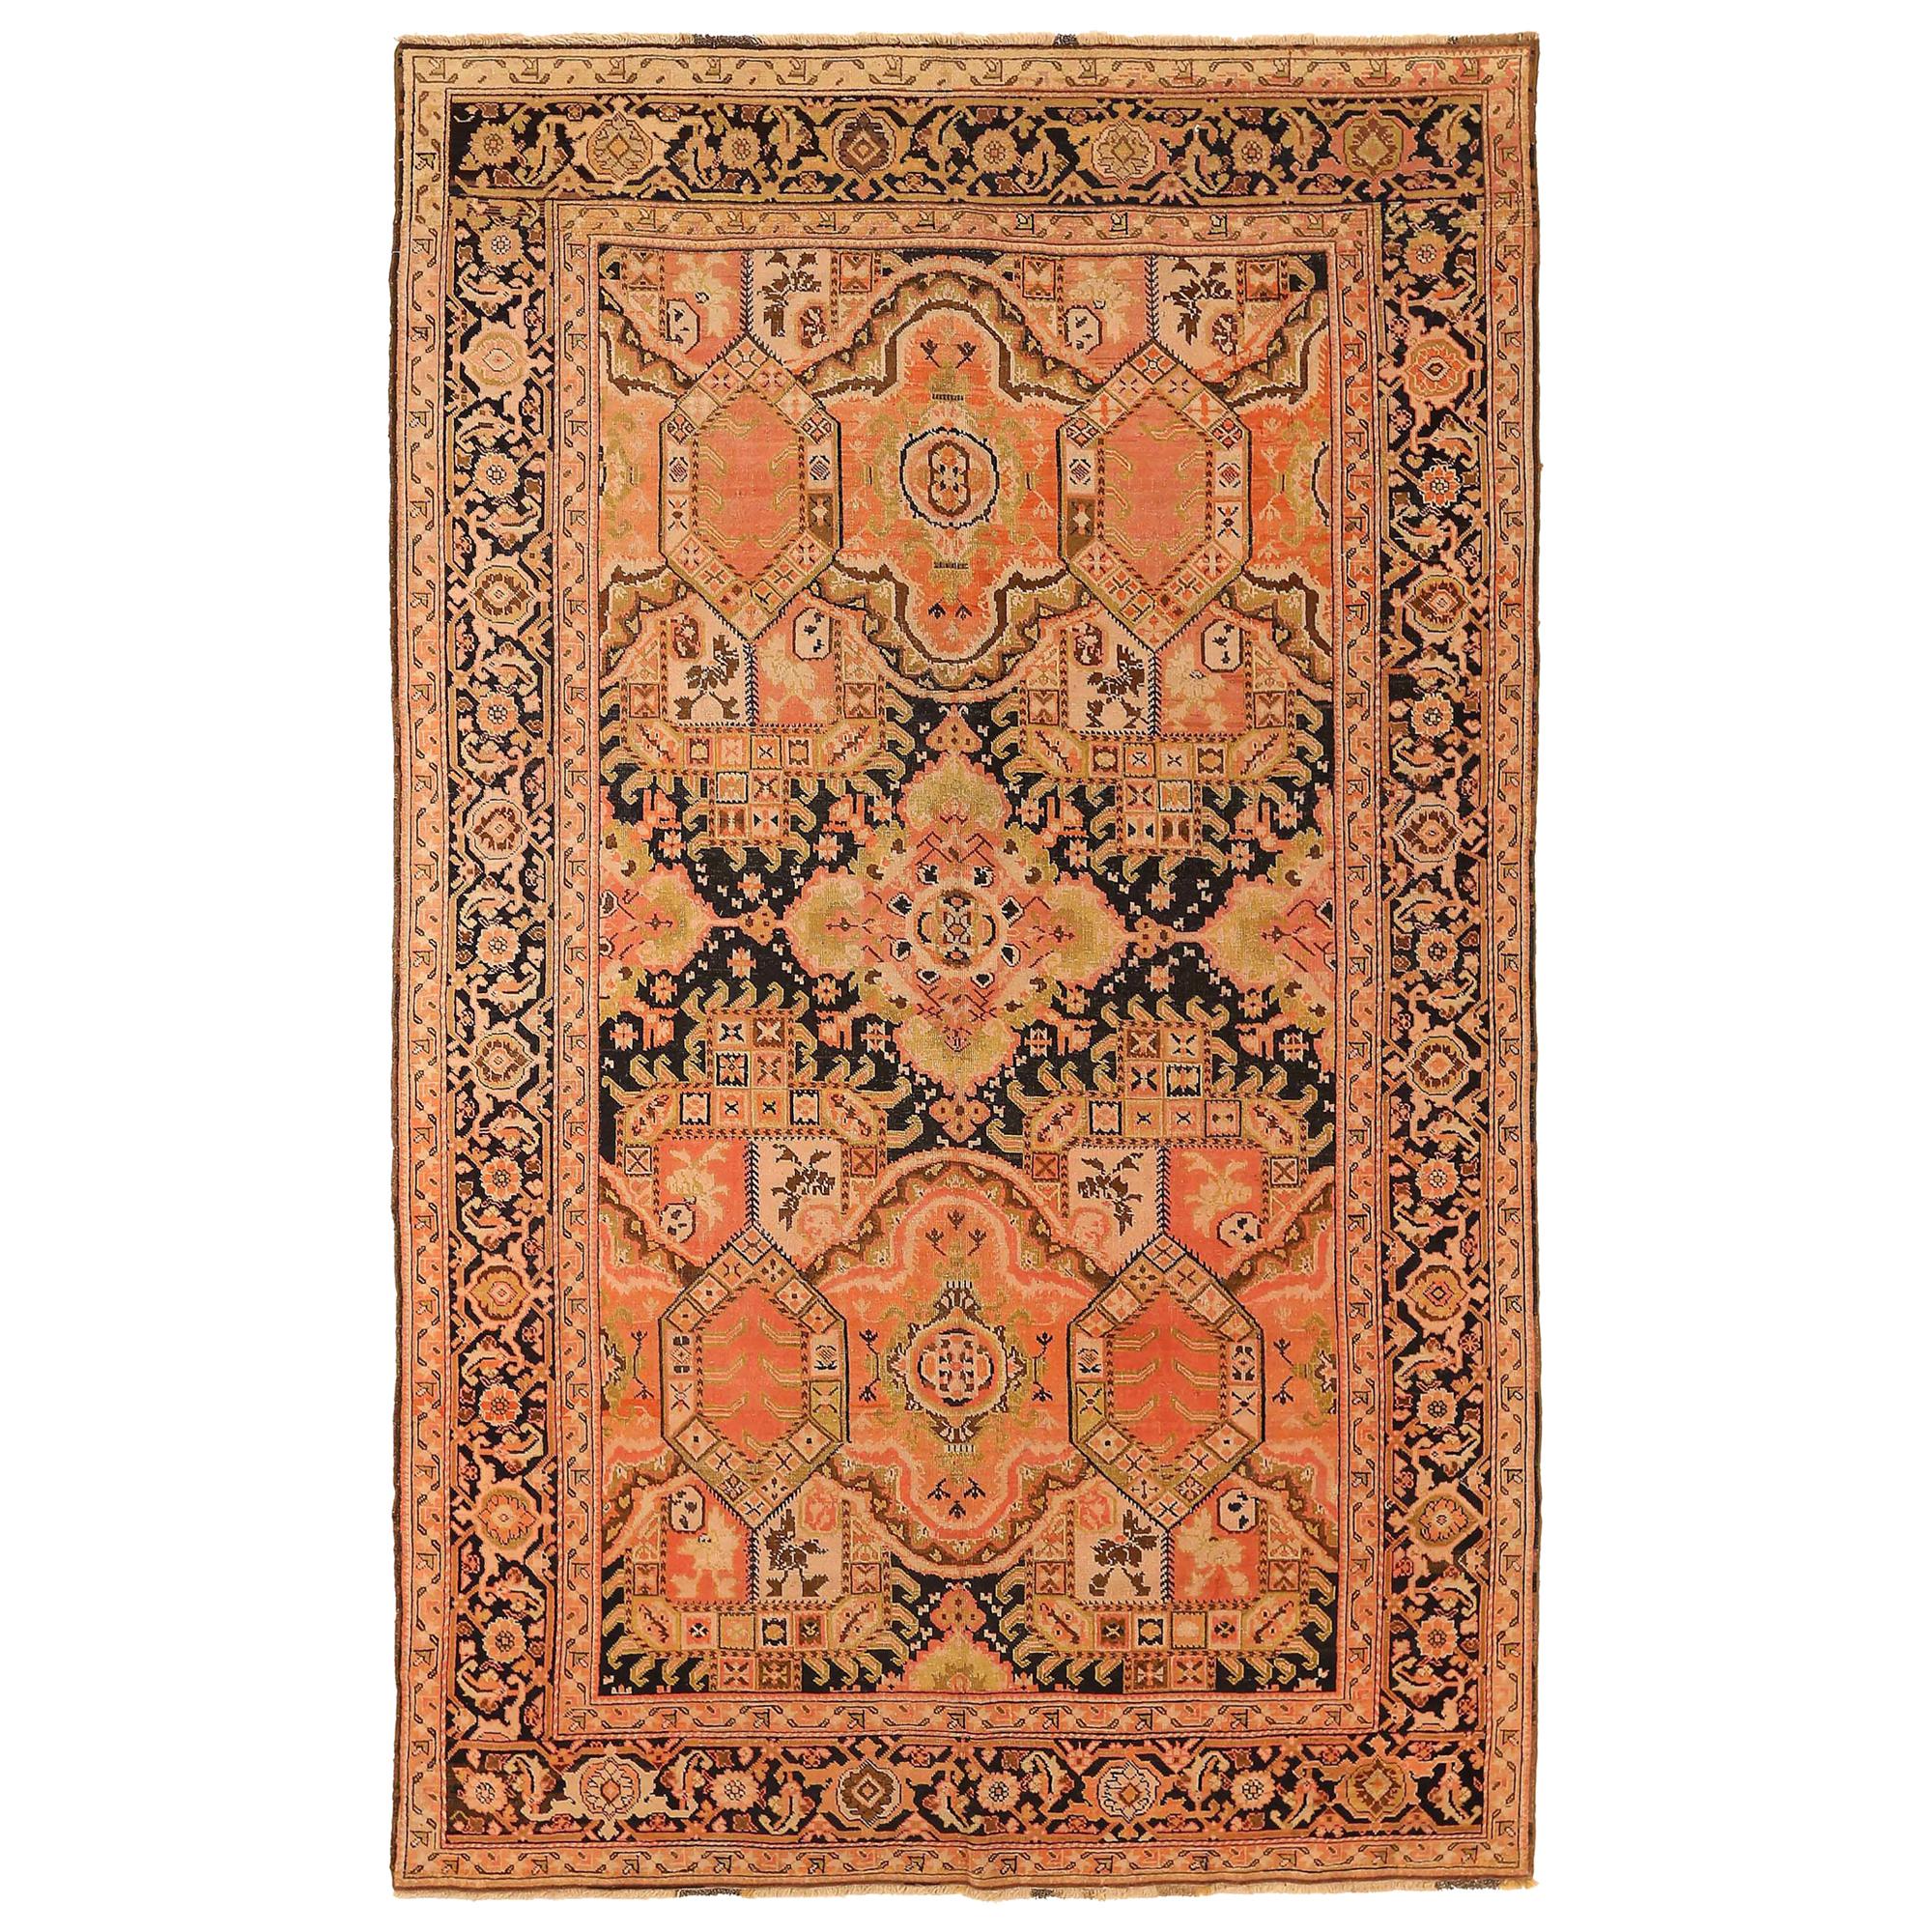 Antiker russischer Teppich Karebagh Design, antik